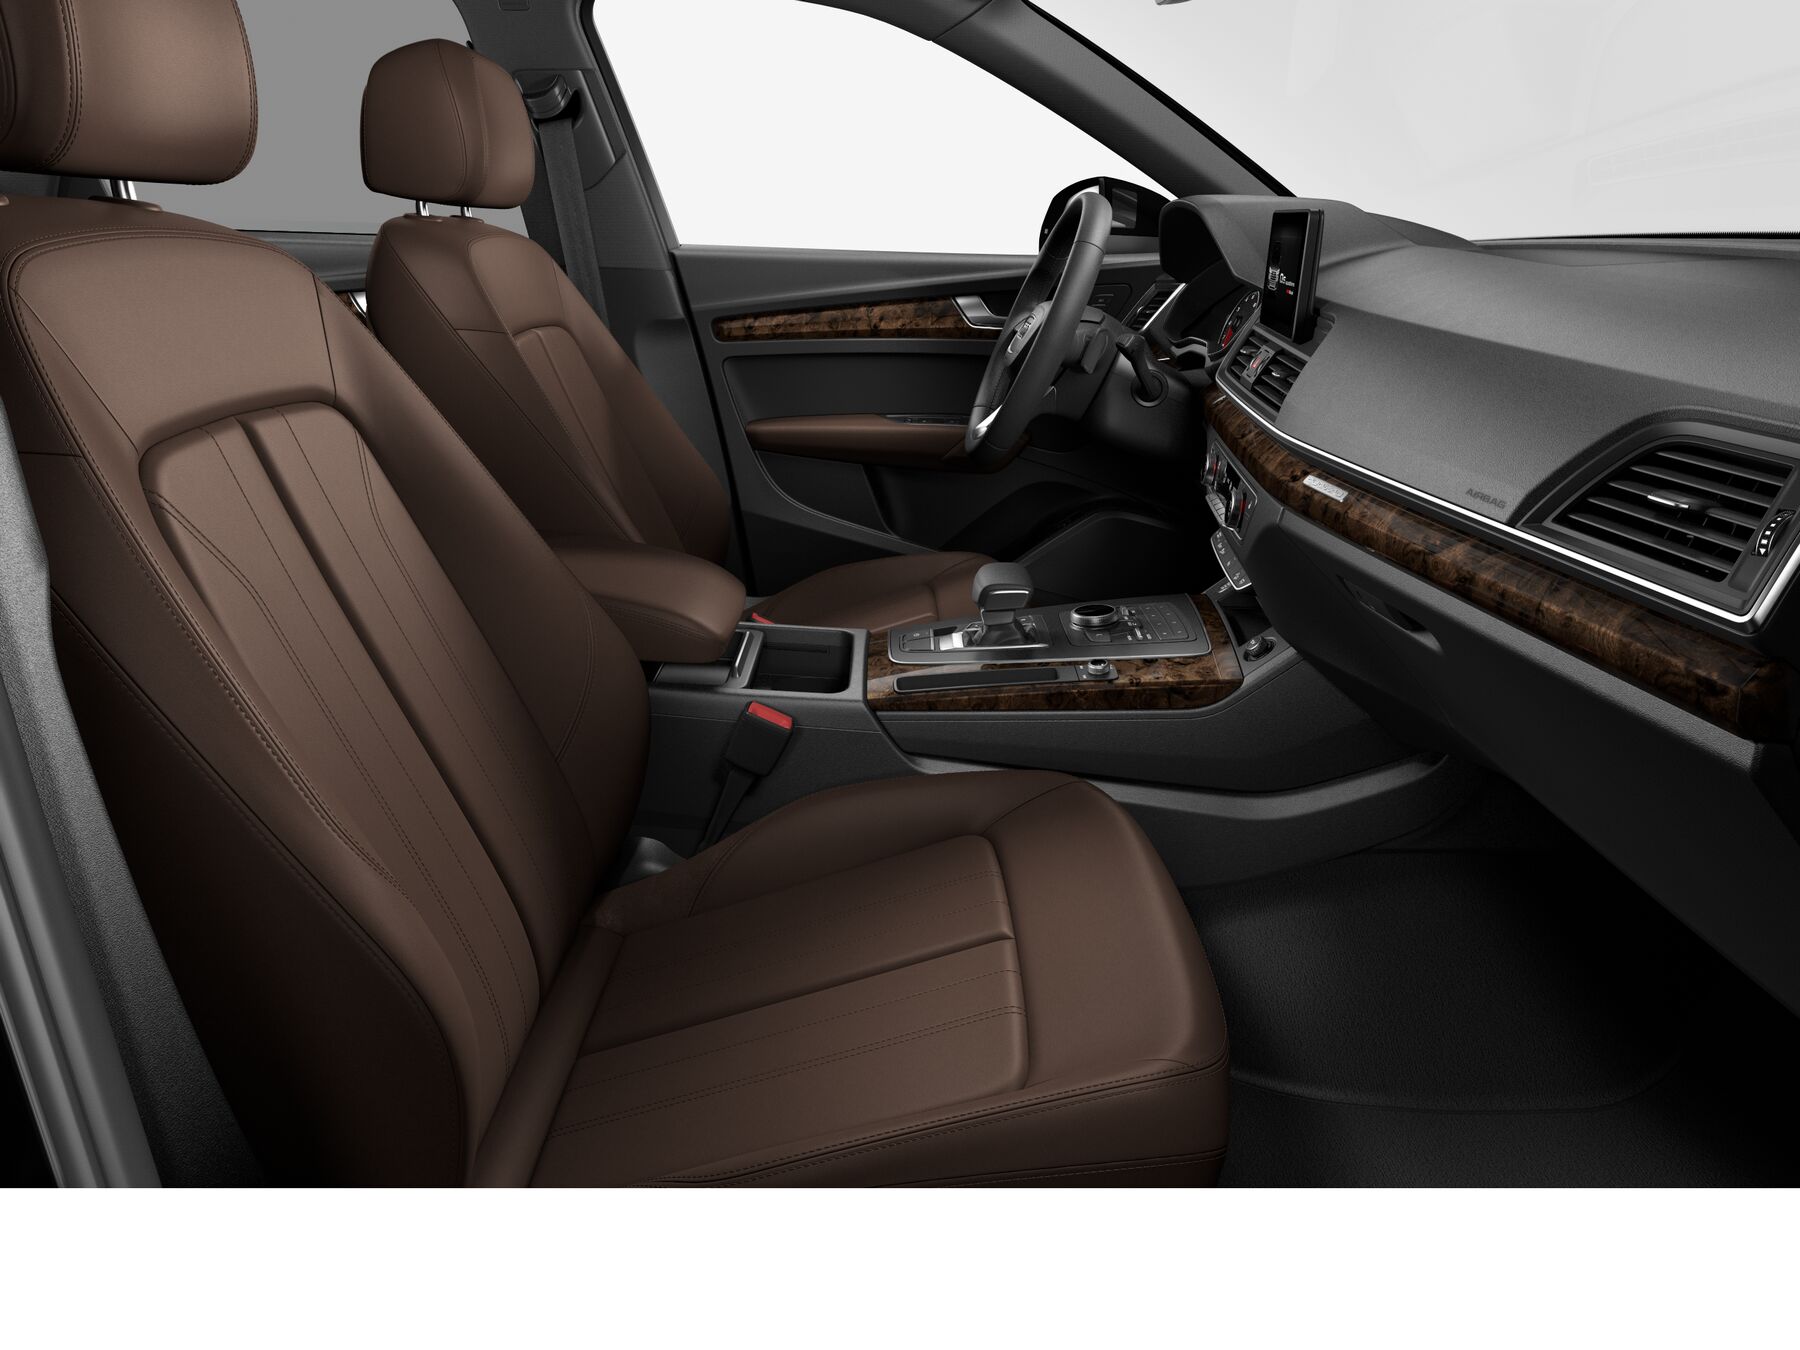 2018 Audi Q7 Nougat Brown Interior Car Audi